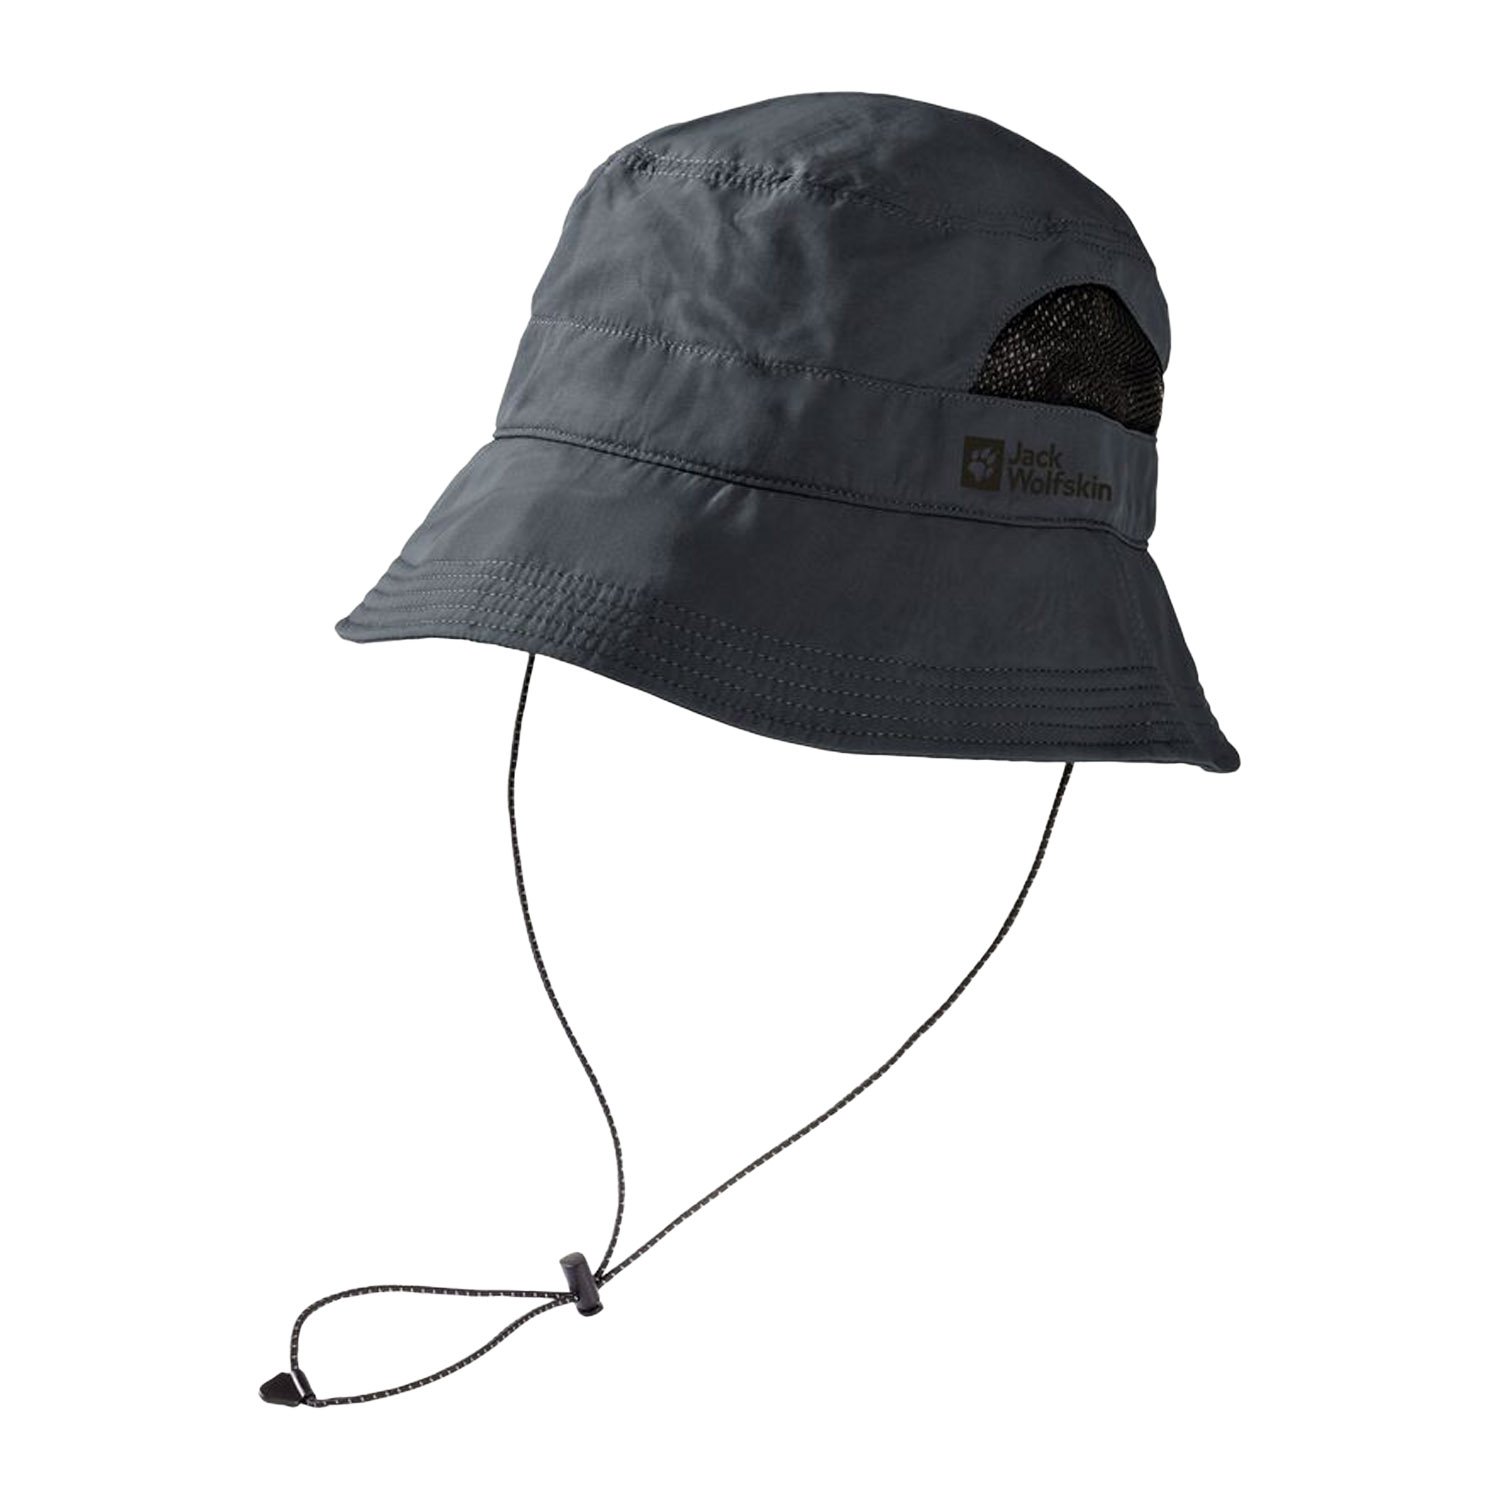 Jack Wolfskin Vent Bucket Hat Şapka - Antrasit - 1